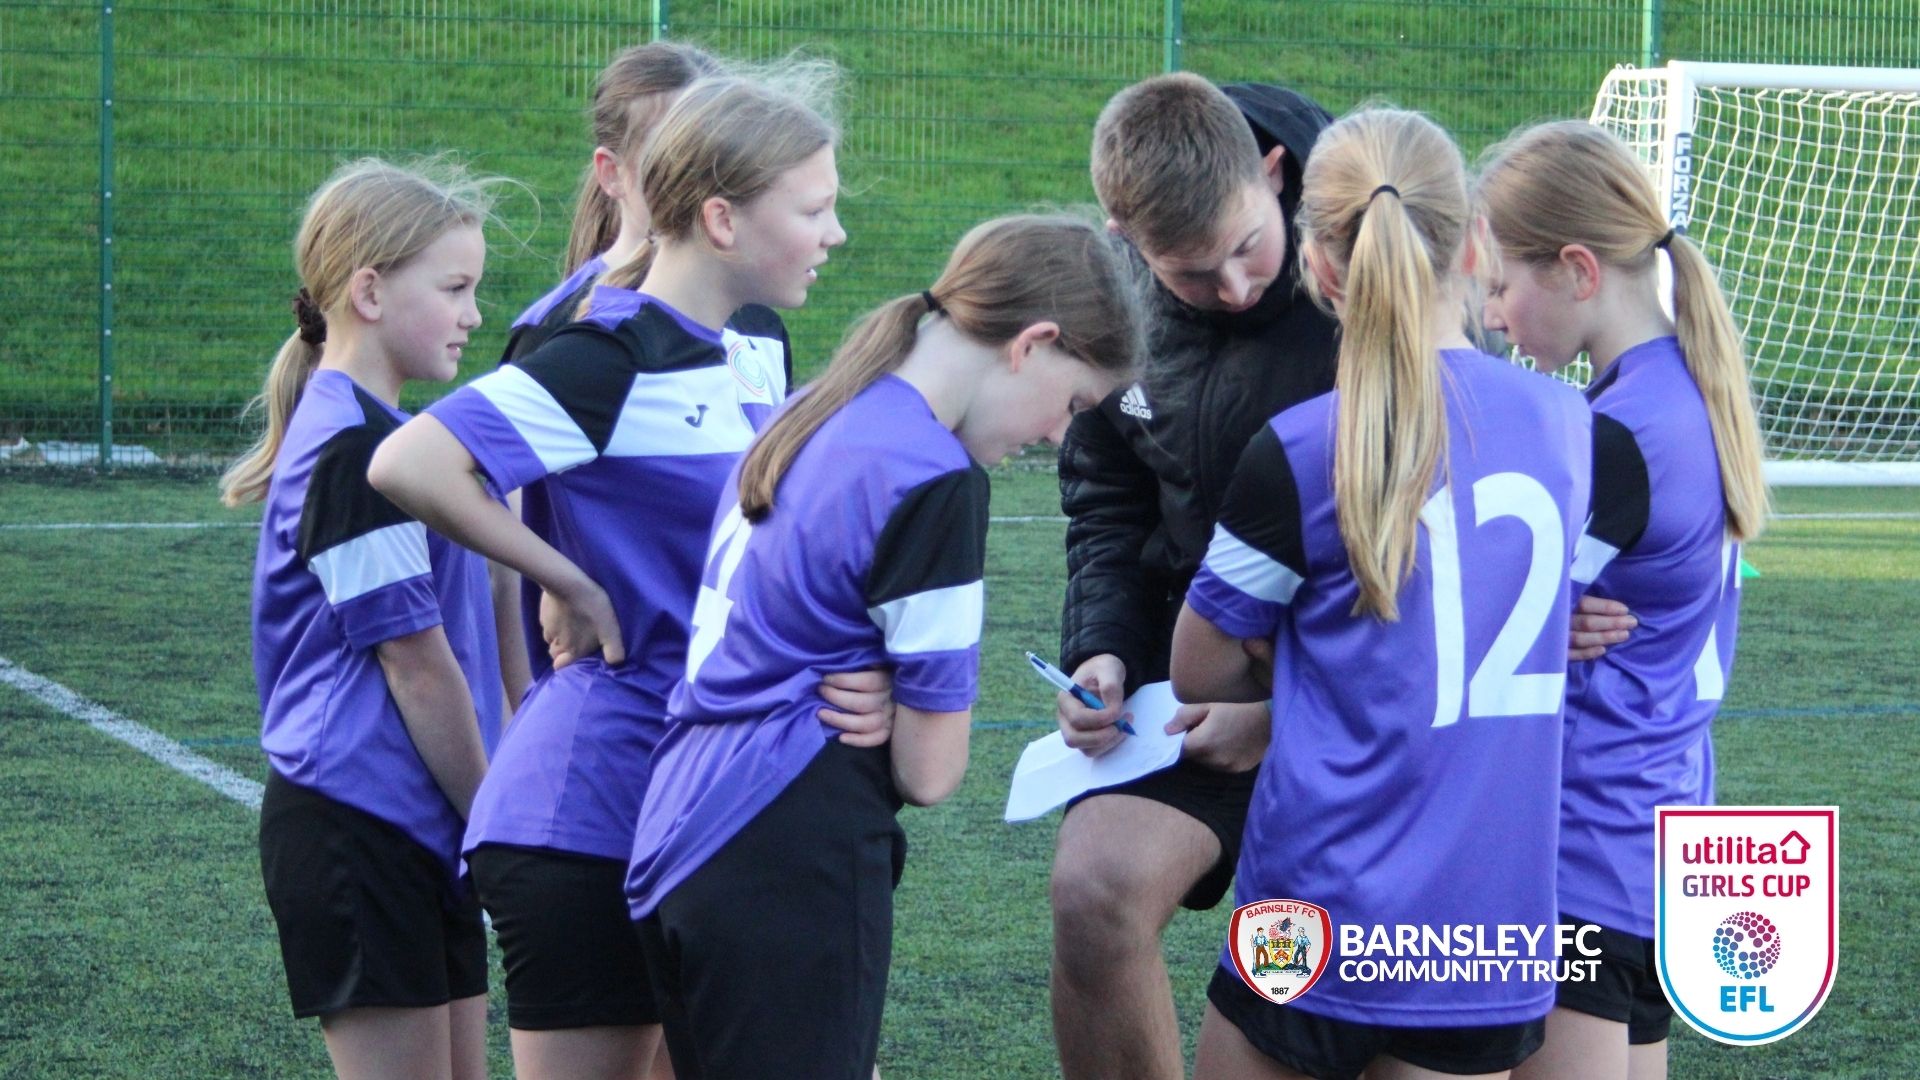 Barnsley FC Community Trust to host EFL Utilita Girls Cup